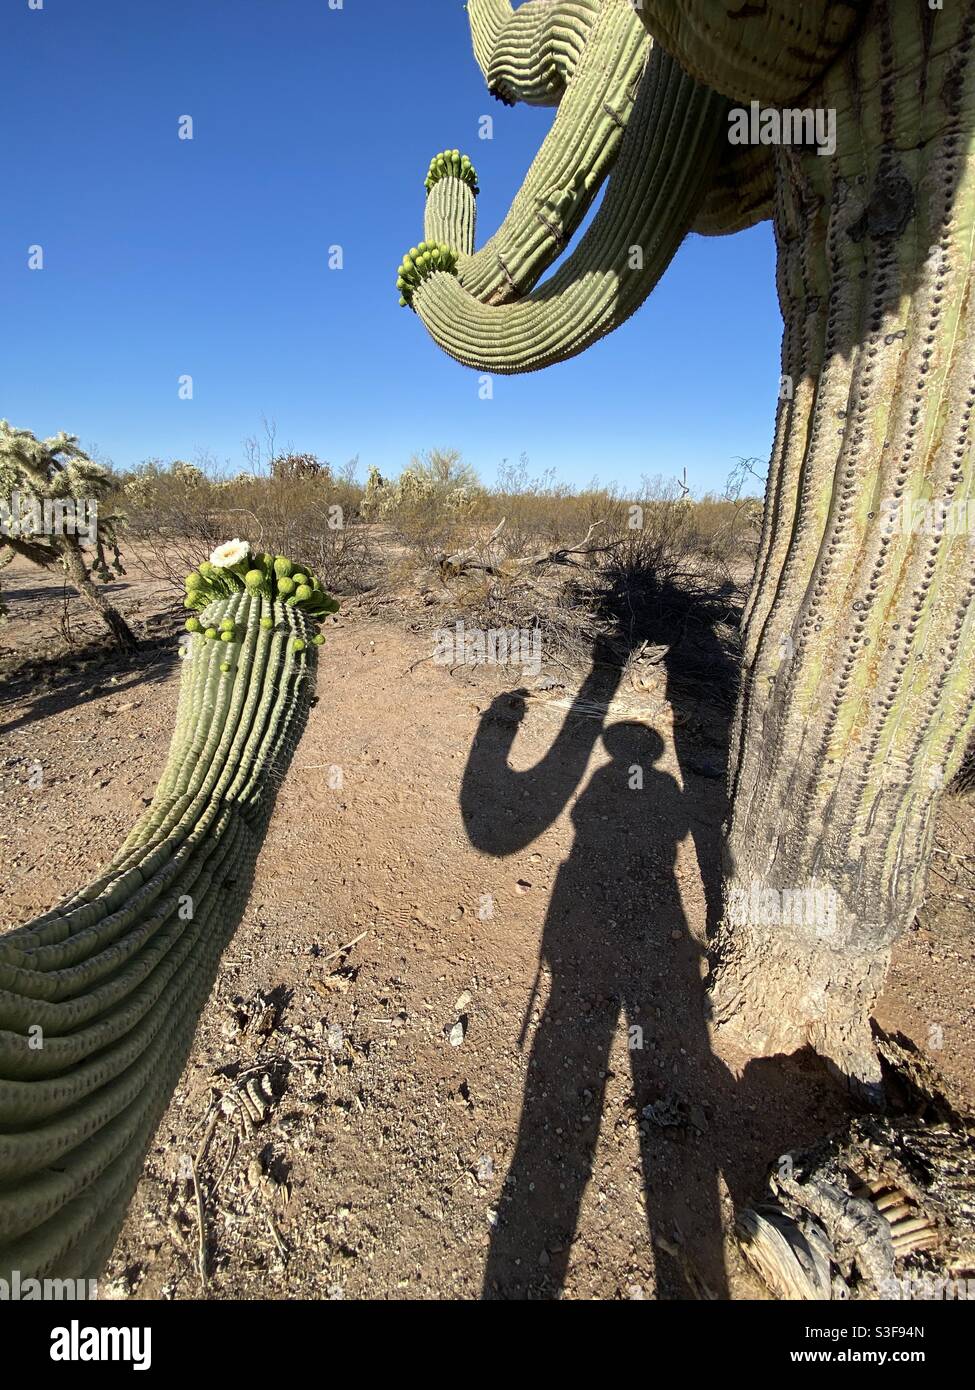 Schattenspiel des schwingenden Arms eines riesigen saguaro-Kaktus und einer Person, die darunter steht. Stockfoto